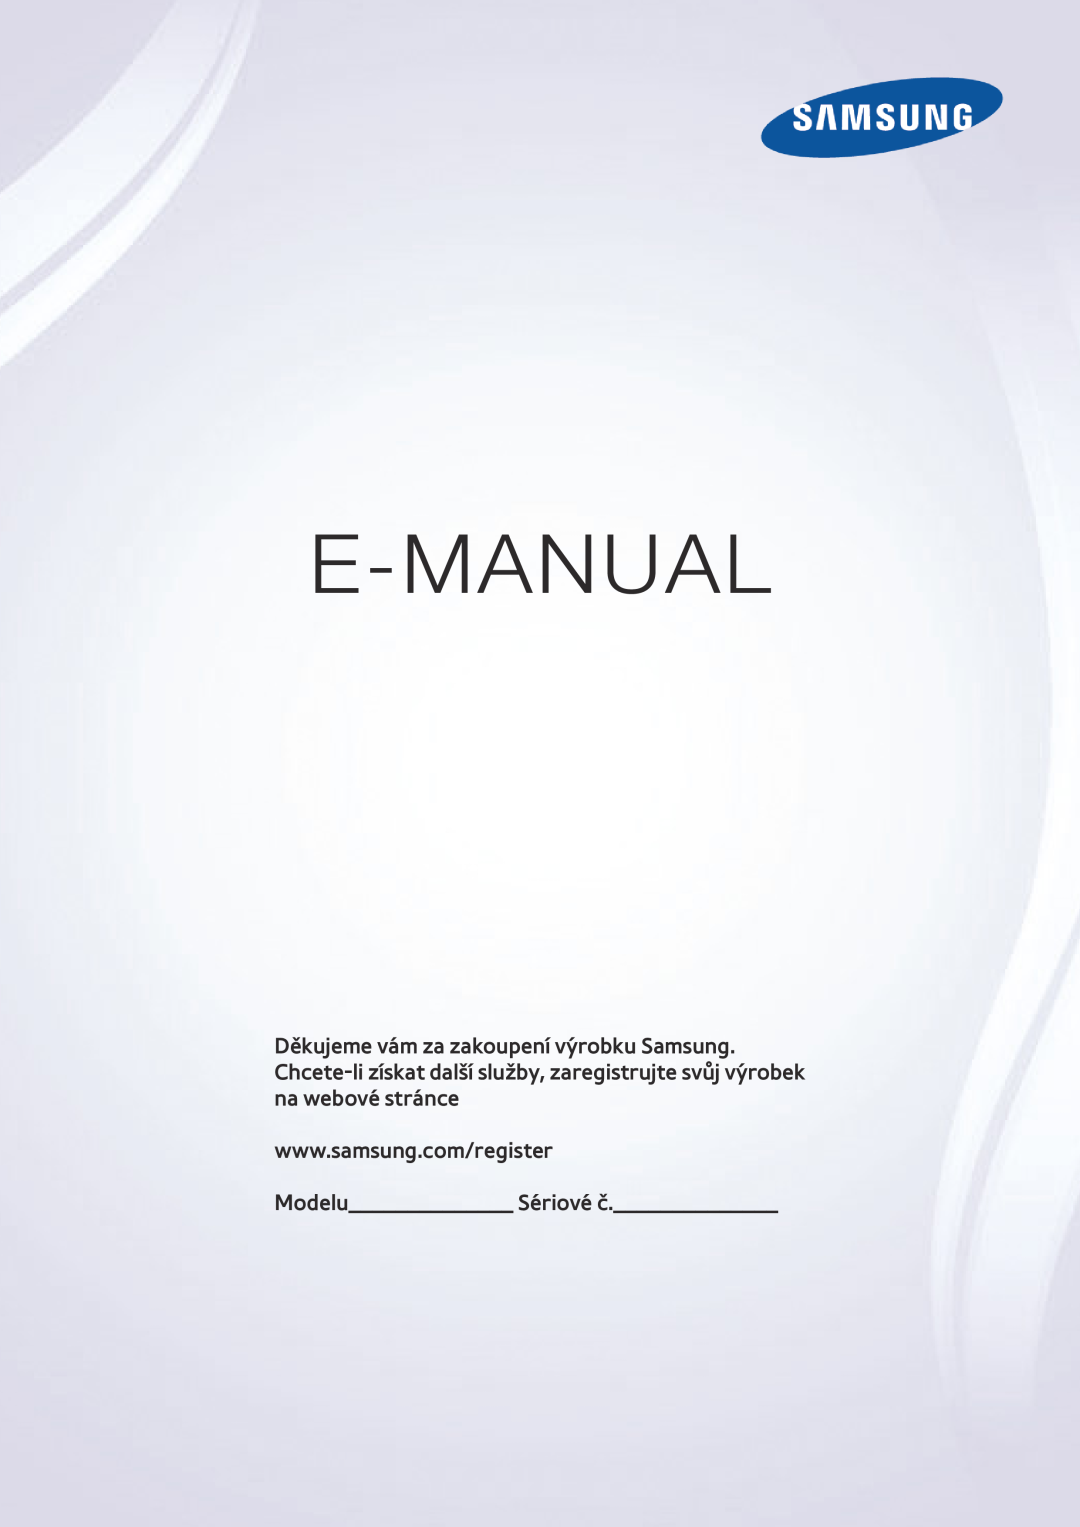 Samsung UE40J6250SUXZG, UE65J6299SUXZG, UE40J6289SUXZG, UE55J6289SUXZG, UE60J6289SUXZG manual E-Manual, Modelu Sériové č 